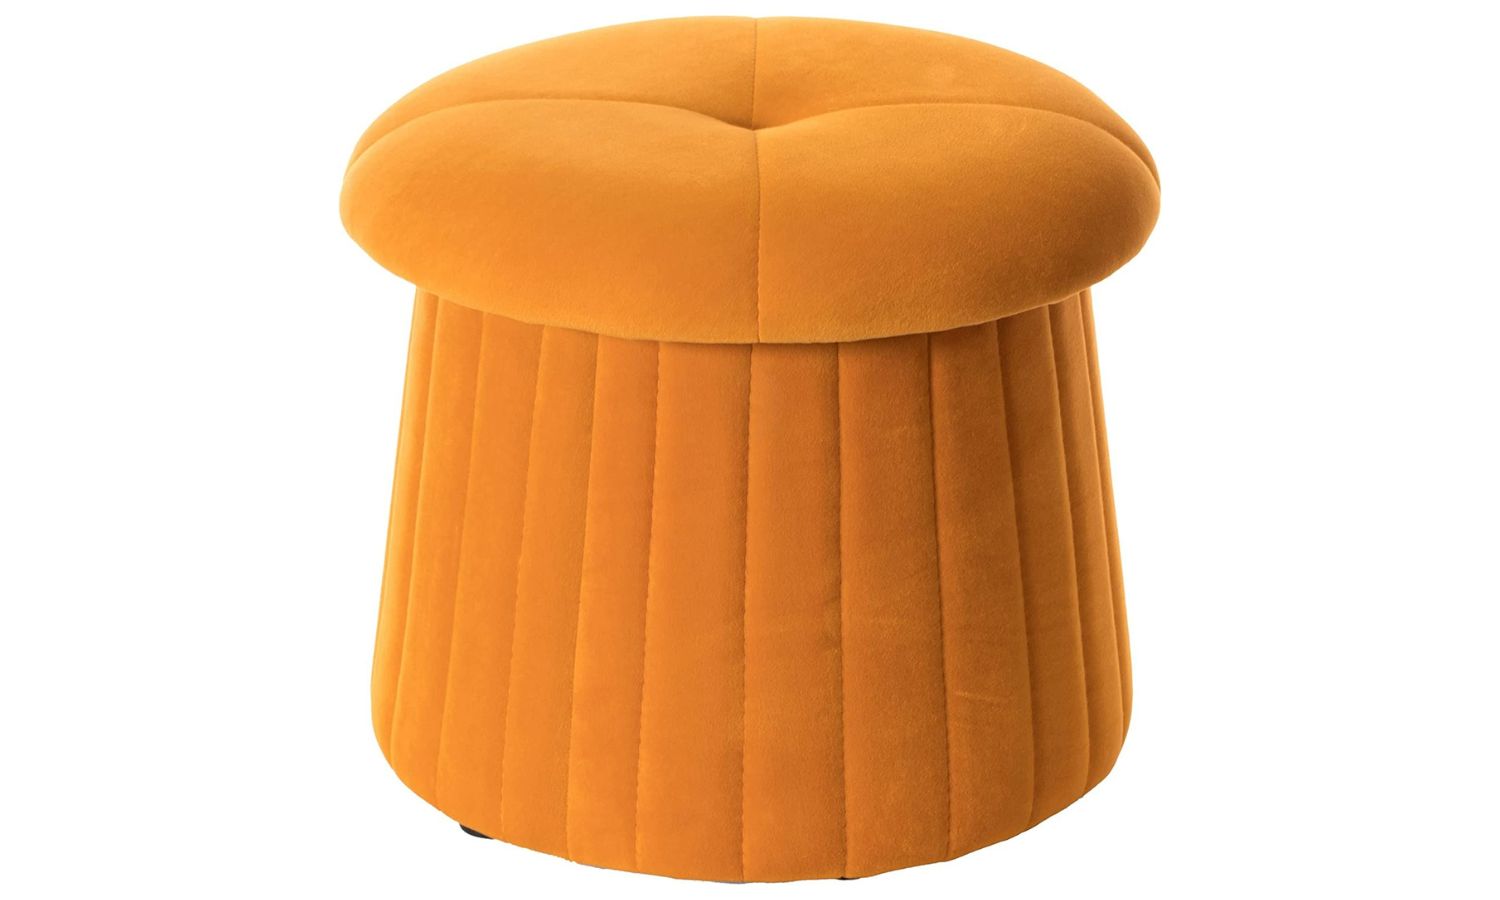 Mushroom shape stool